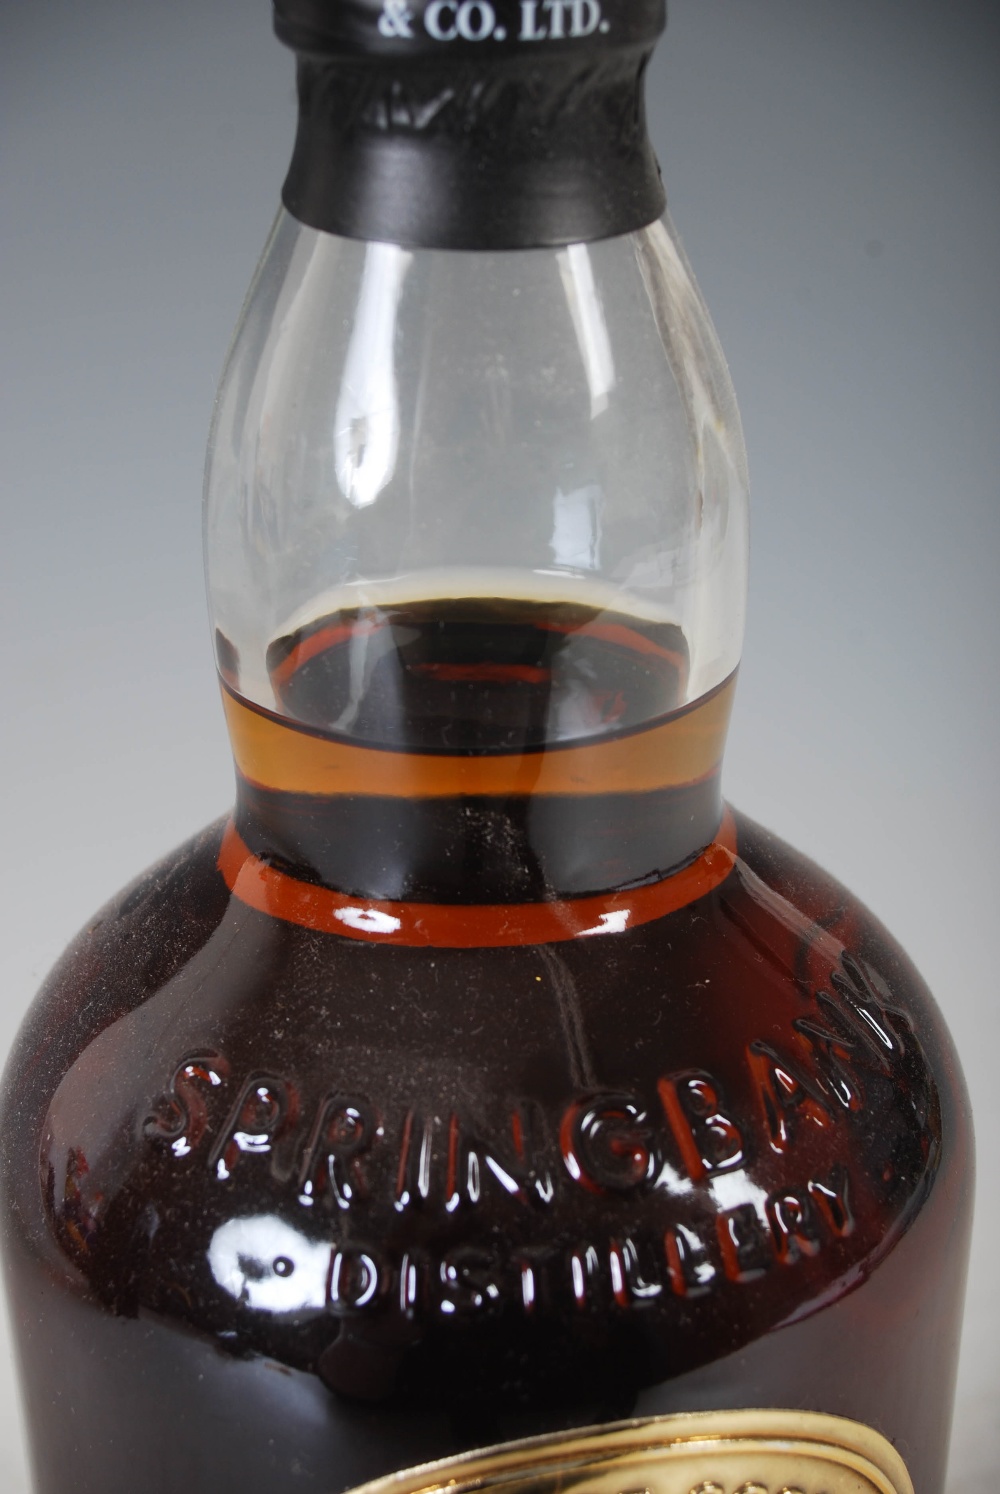 A boxed bottle of Springbank Campbeltown Single Malt Scotch Whisky, Distilled Nov. 2001, Bottled - Image 4 of 5